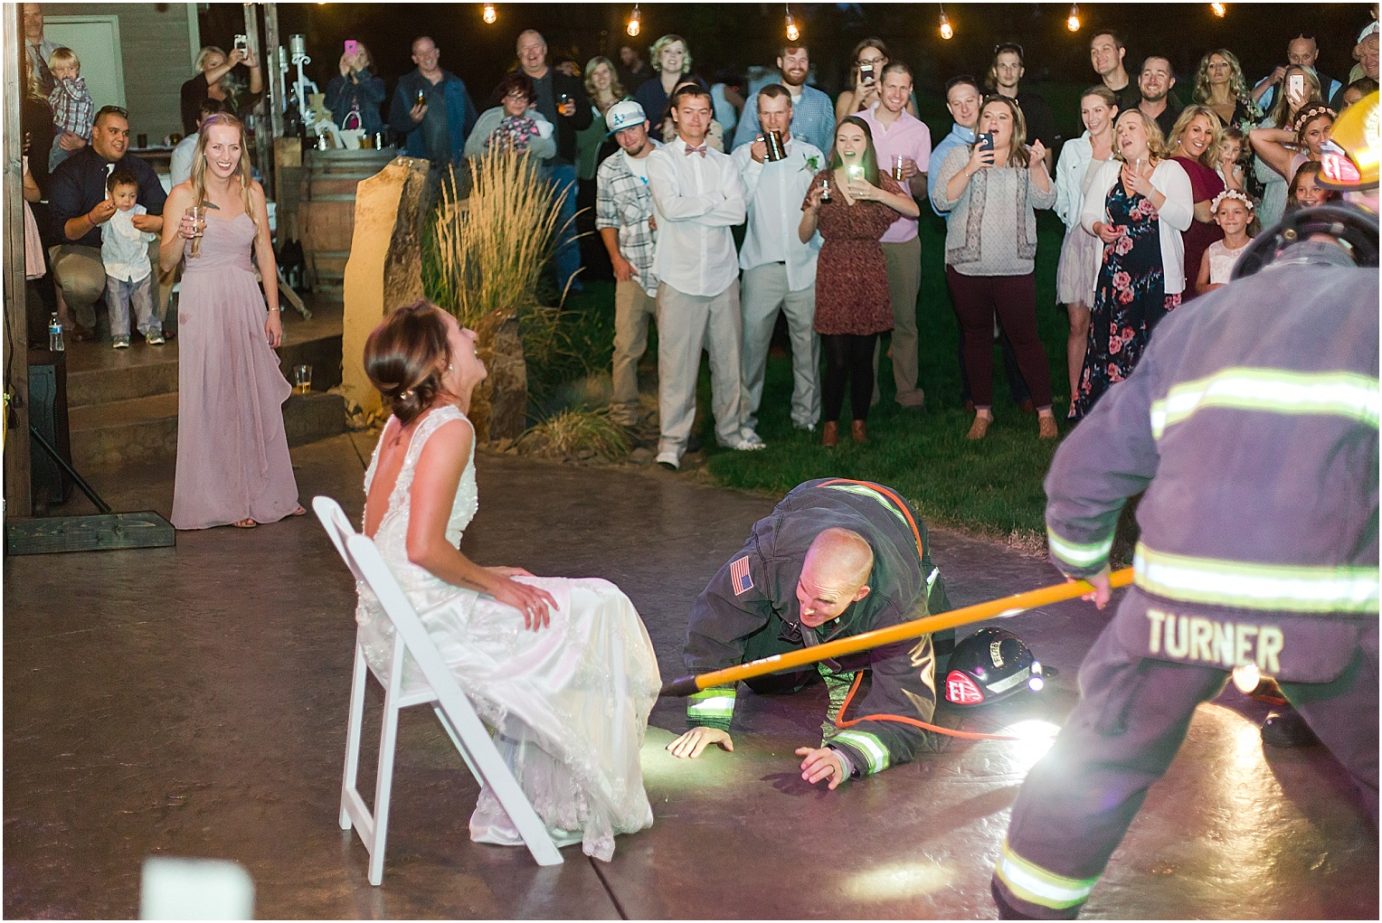 Wenatchee backyard wedding garter toss with firemen